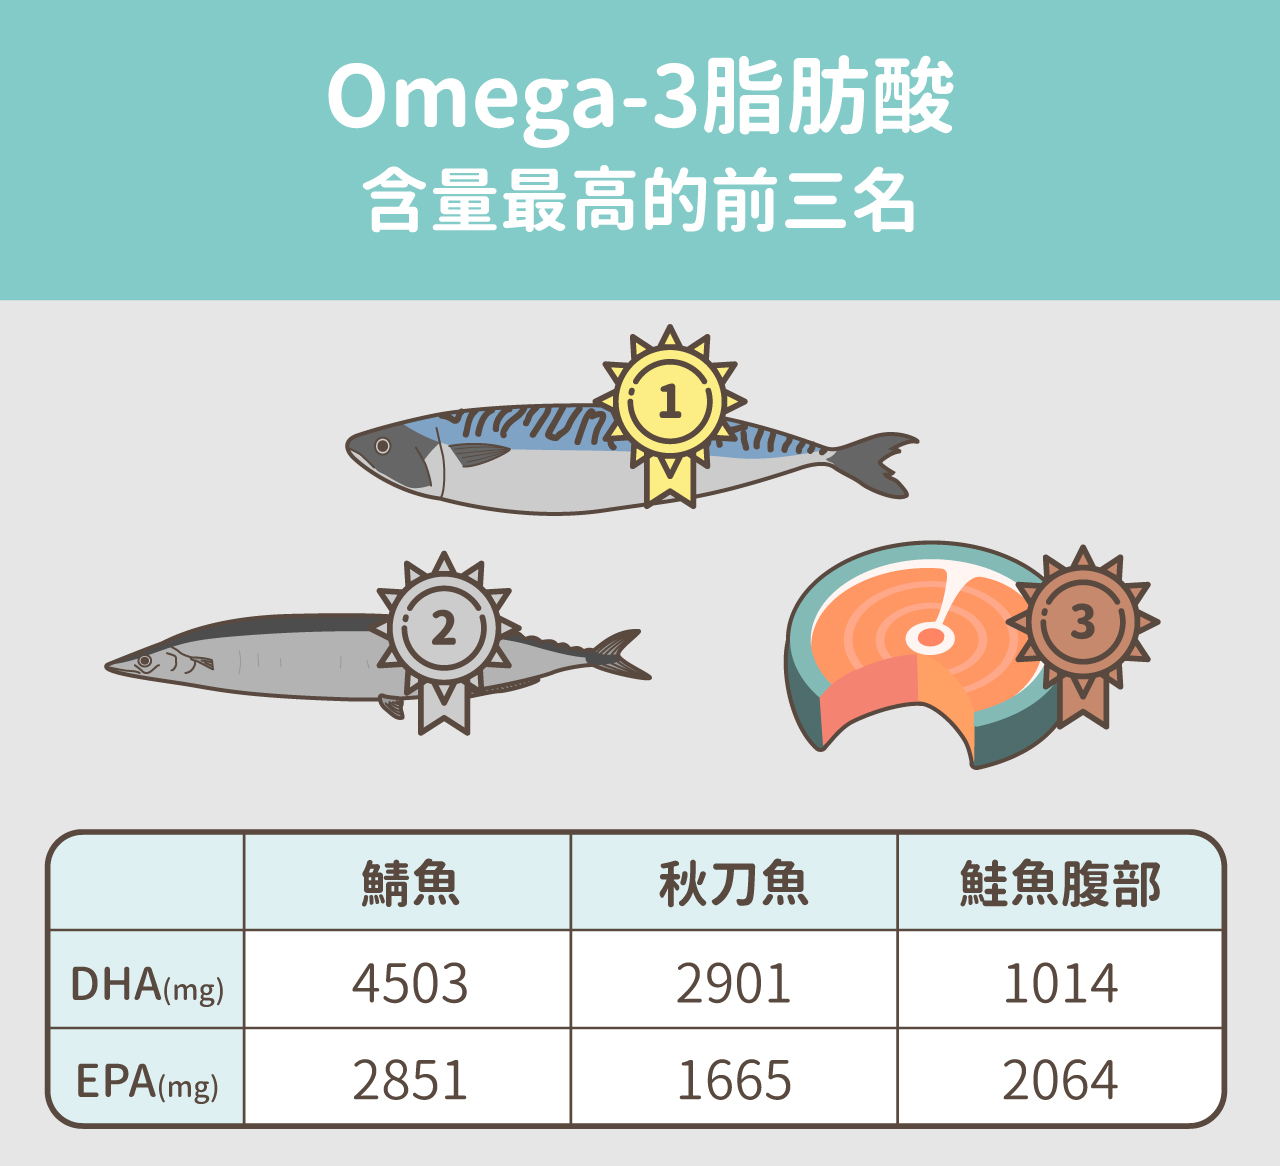 Omega-3脂肪酸含量最高的前三名：鯖魚、秋刀魚、鮭魚腹部